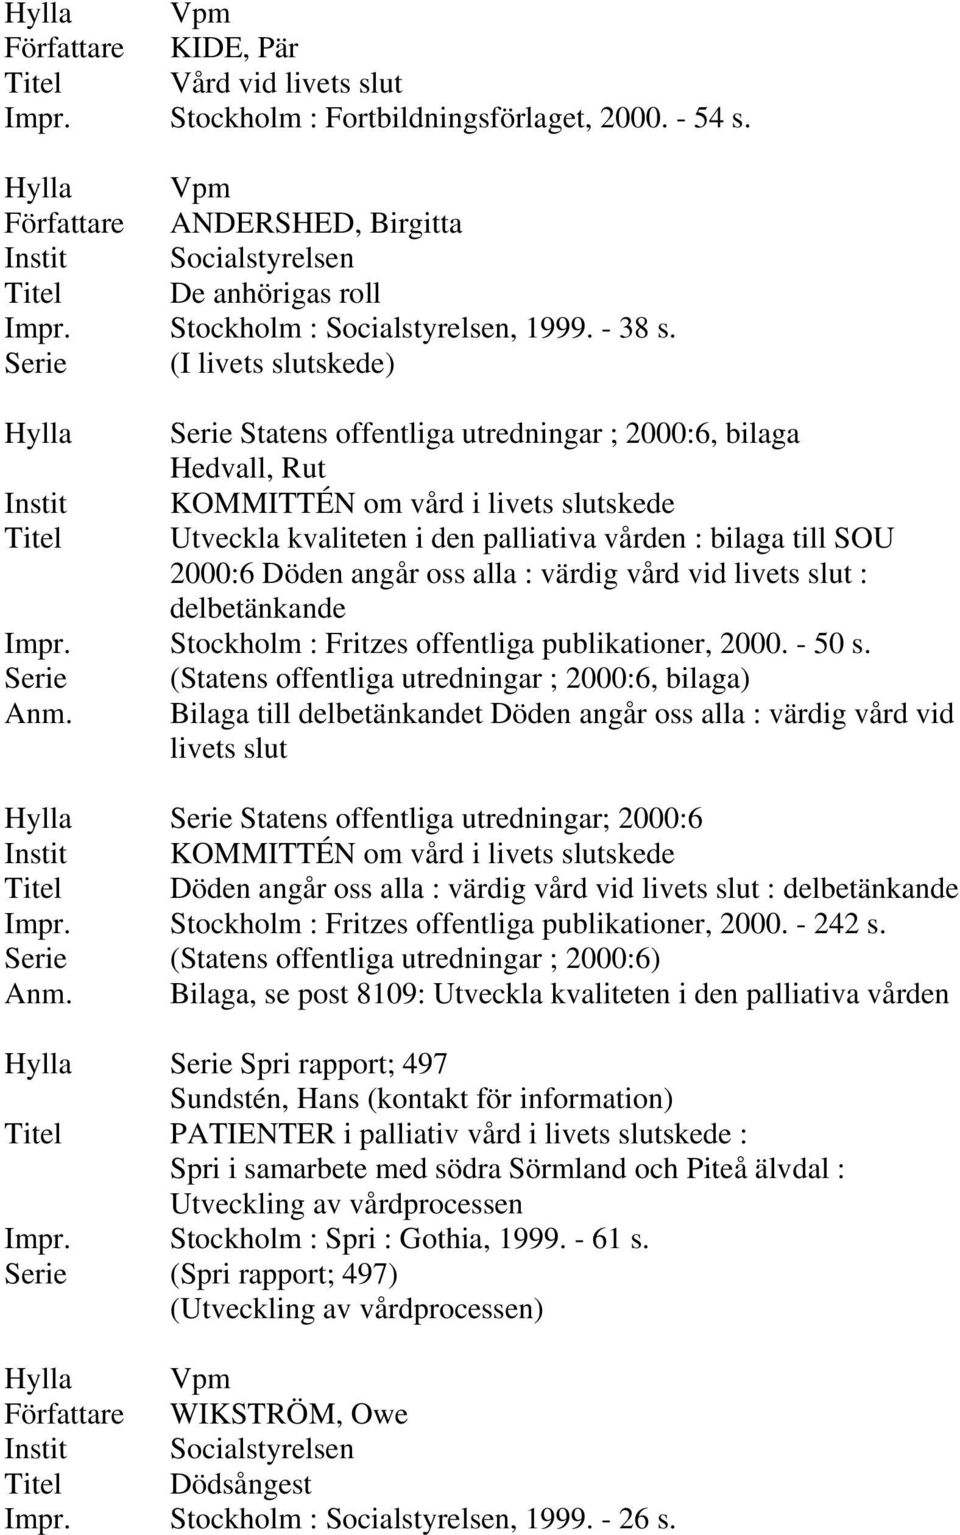 vid livets slut : delbetänkande Impr. Stockholm : Fritzes offentliga publikationer, 2000. - 50 s. Serie (Statens offentliga utredningar ; 2000:6, bilaga) Anm.